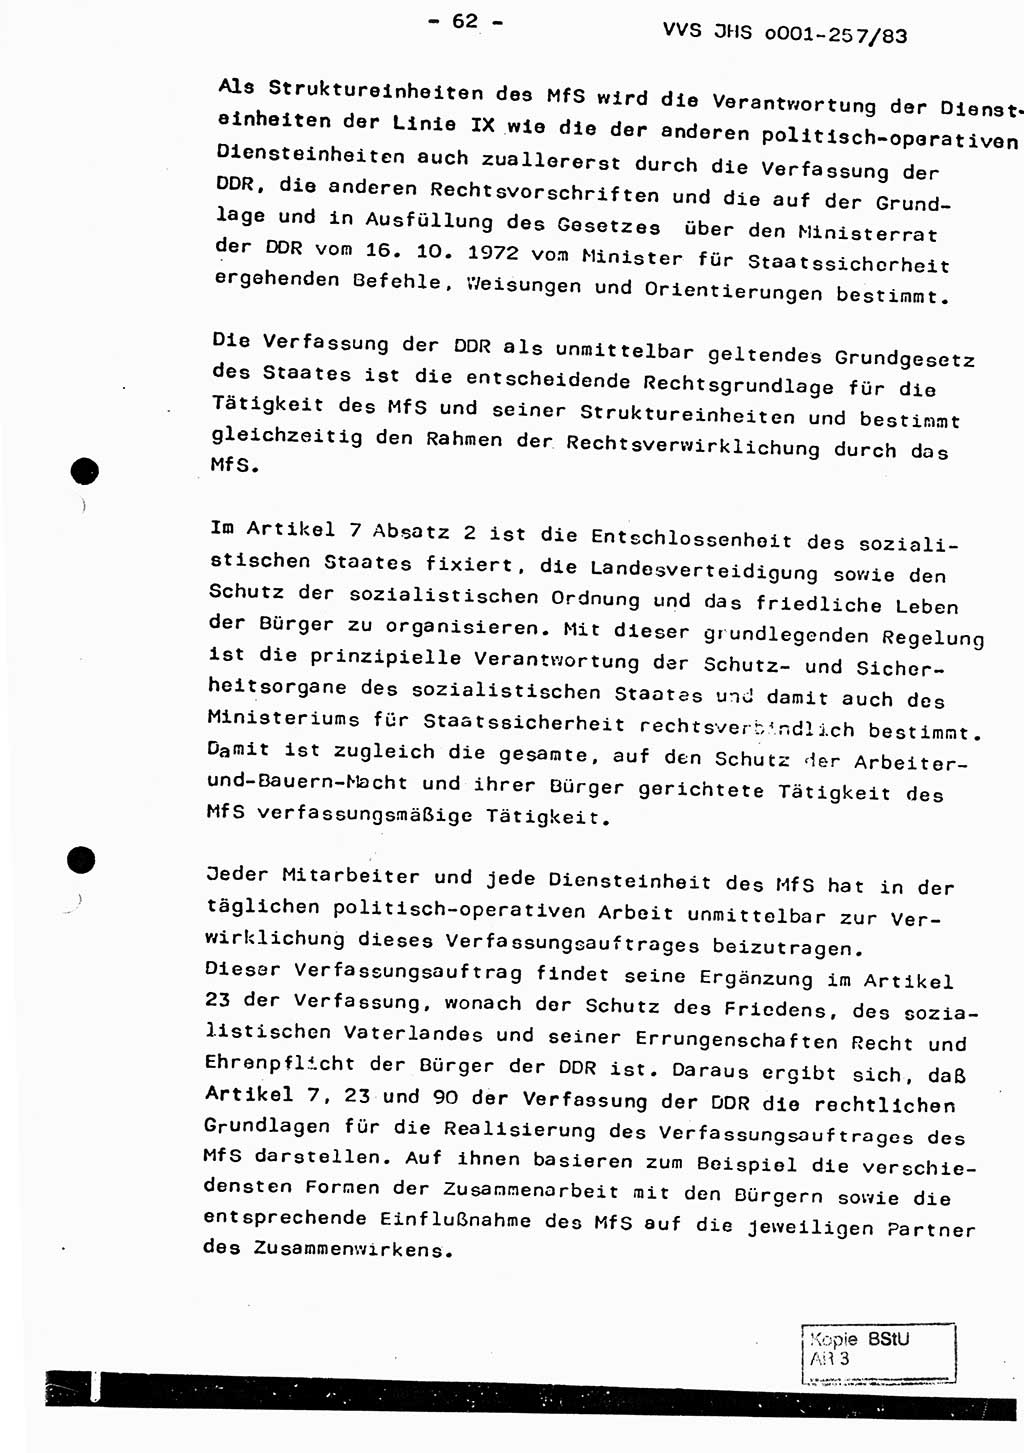 Dissertation, Oberst Helmut Lubas (BV Mdg.), Oberstleutnant Manfred Eschberger (HA IX), Oberleutnant Hans-Jürgen Ludwig (JHS), Ministerium für Staatssicherheit (MfS) [Deutsche Demokratische Republik (DDR)], Juristische Hochschule (JHS), Vertrauliche Verschlußsache (VVS) o001-257/83, Potsdam 1983, Seite 62 (Diss. MfS DDR JHS VVS o001-257/83 1983, S. 62)